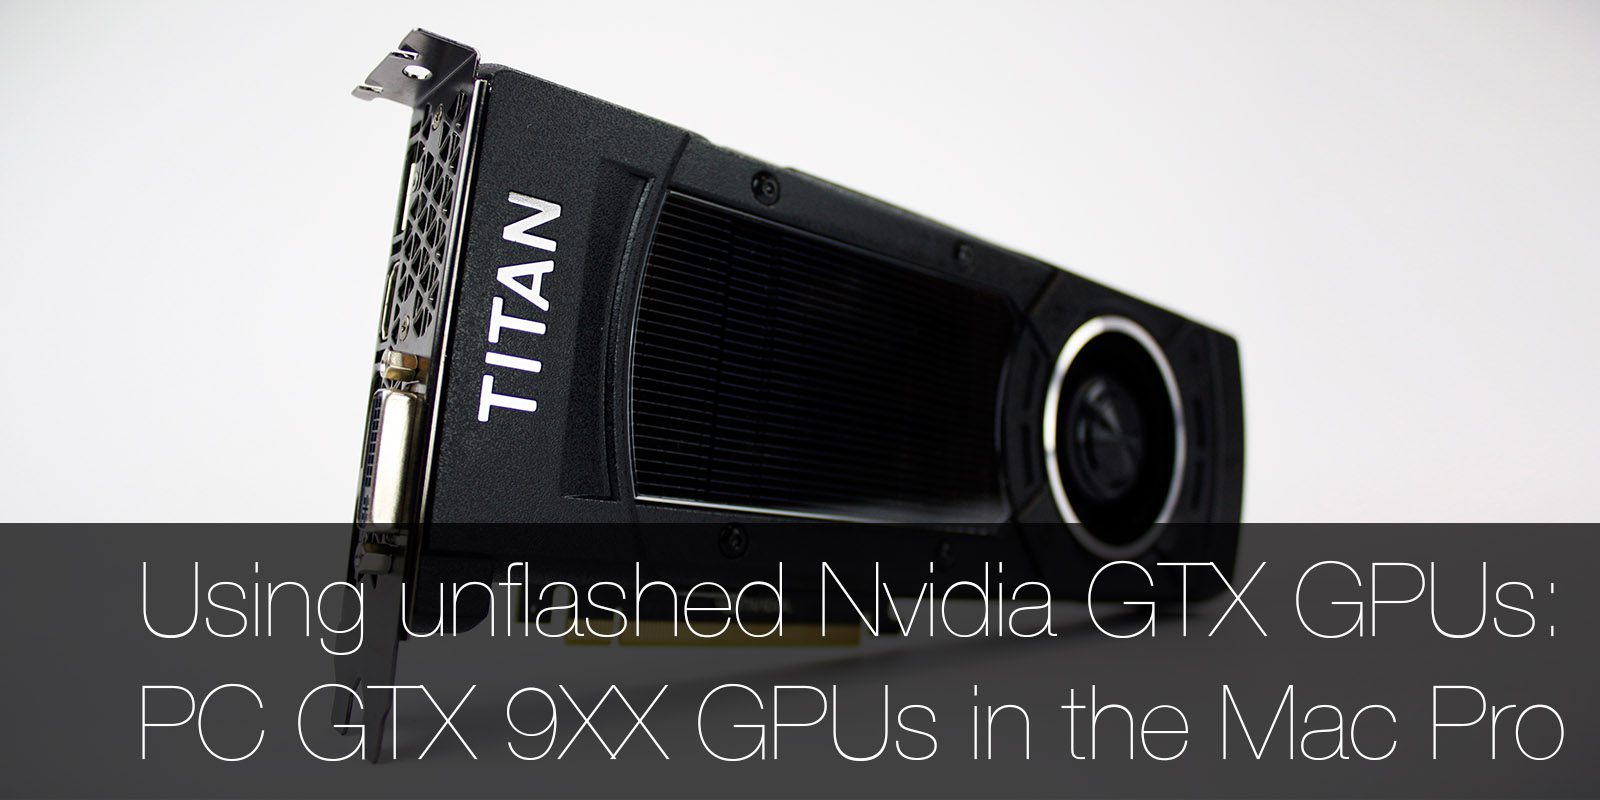 How to Install a Standard PC Nvidia GTX GPU in a Mac Pro: Using an GTX TITAN X, 980 Ti, 980, 970 or 960 in a Mac Pro - MacFinder Blog